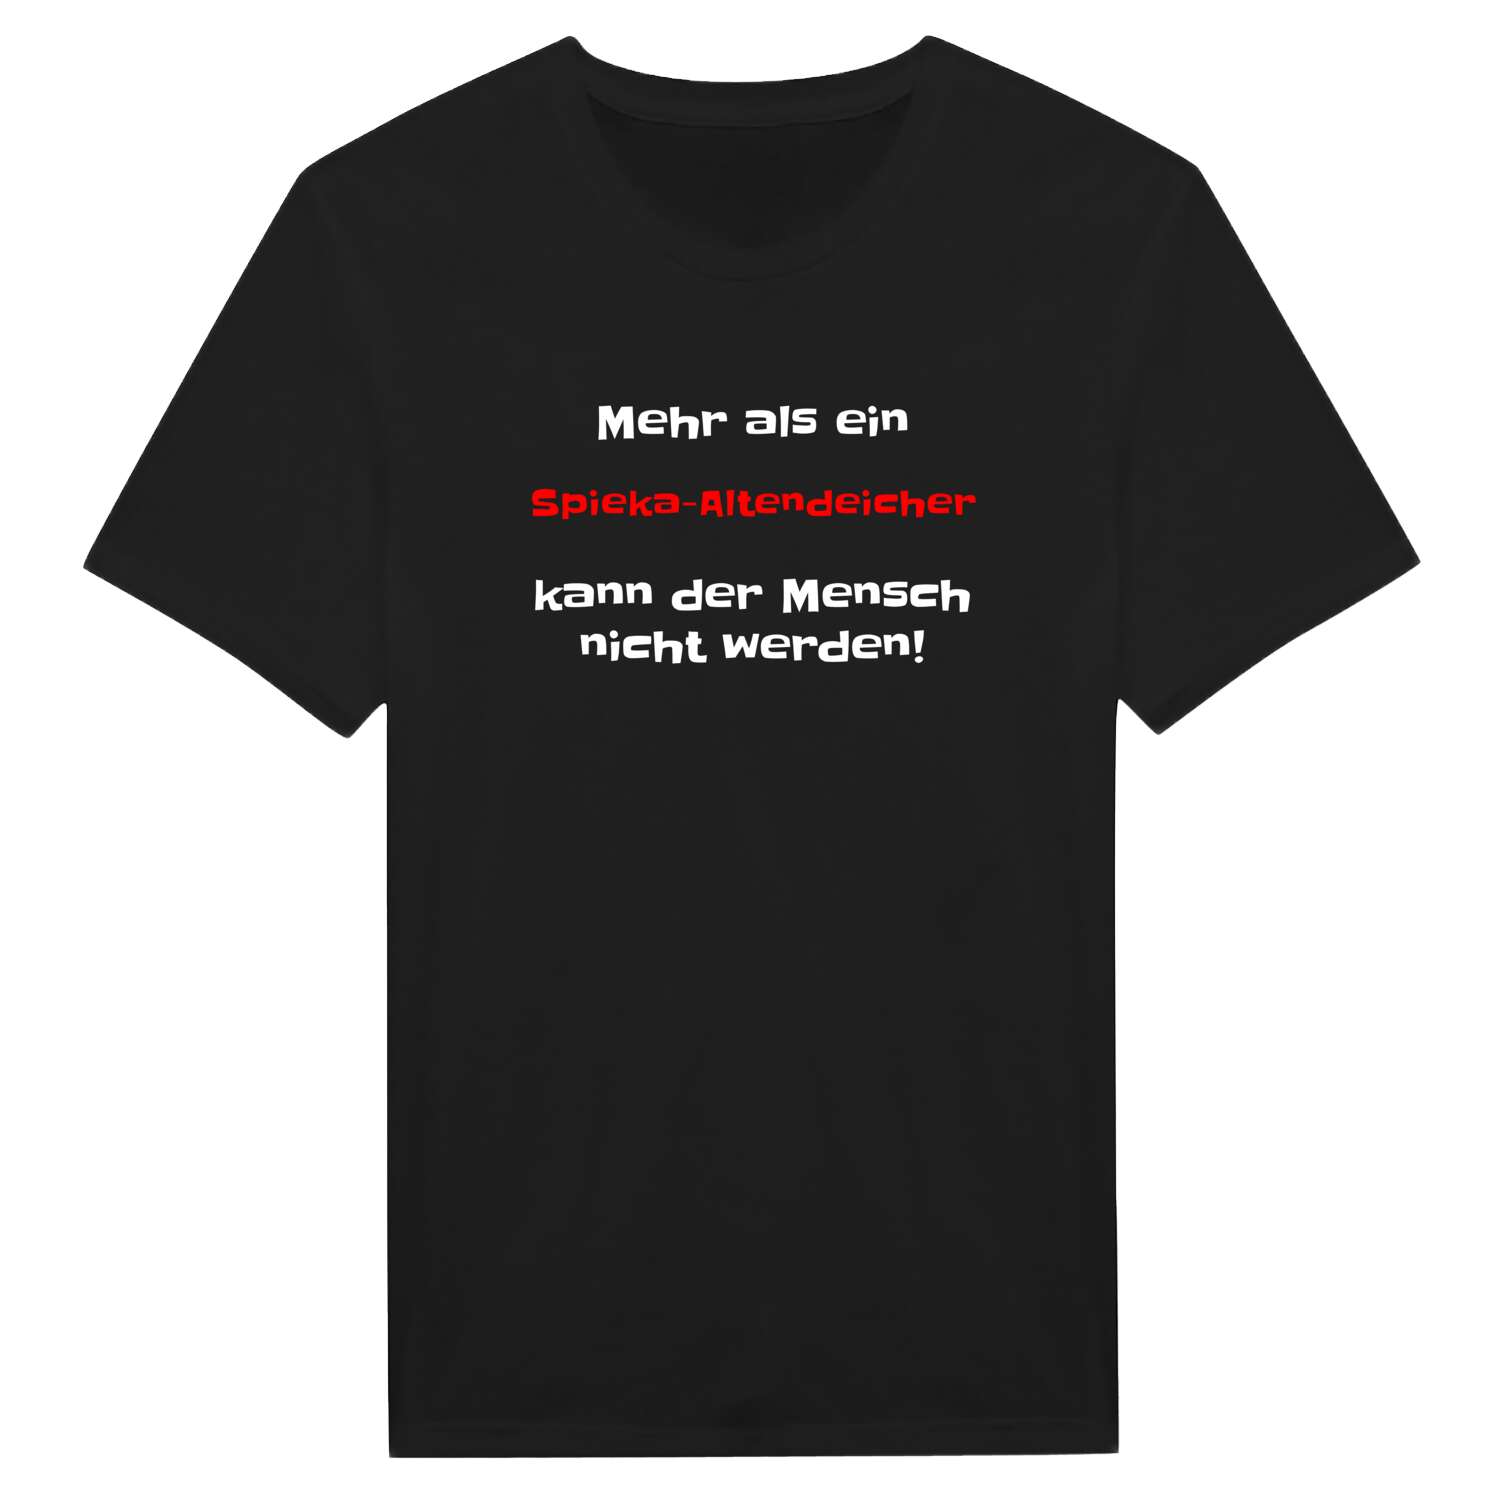 Spieka-Altendeich T-Shirt »Mehr als ein«